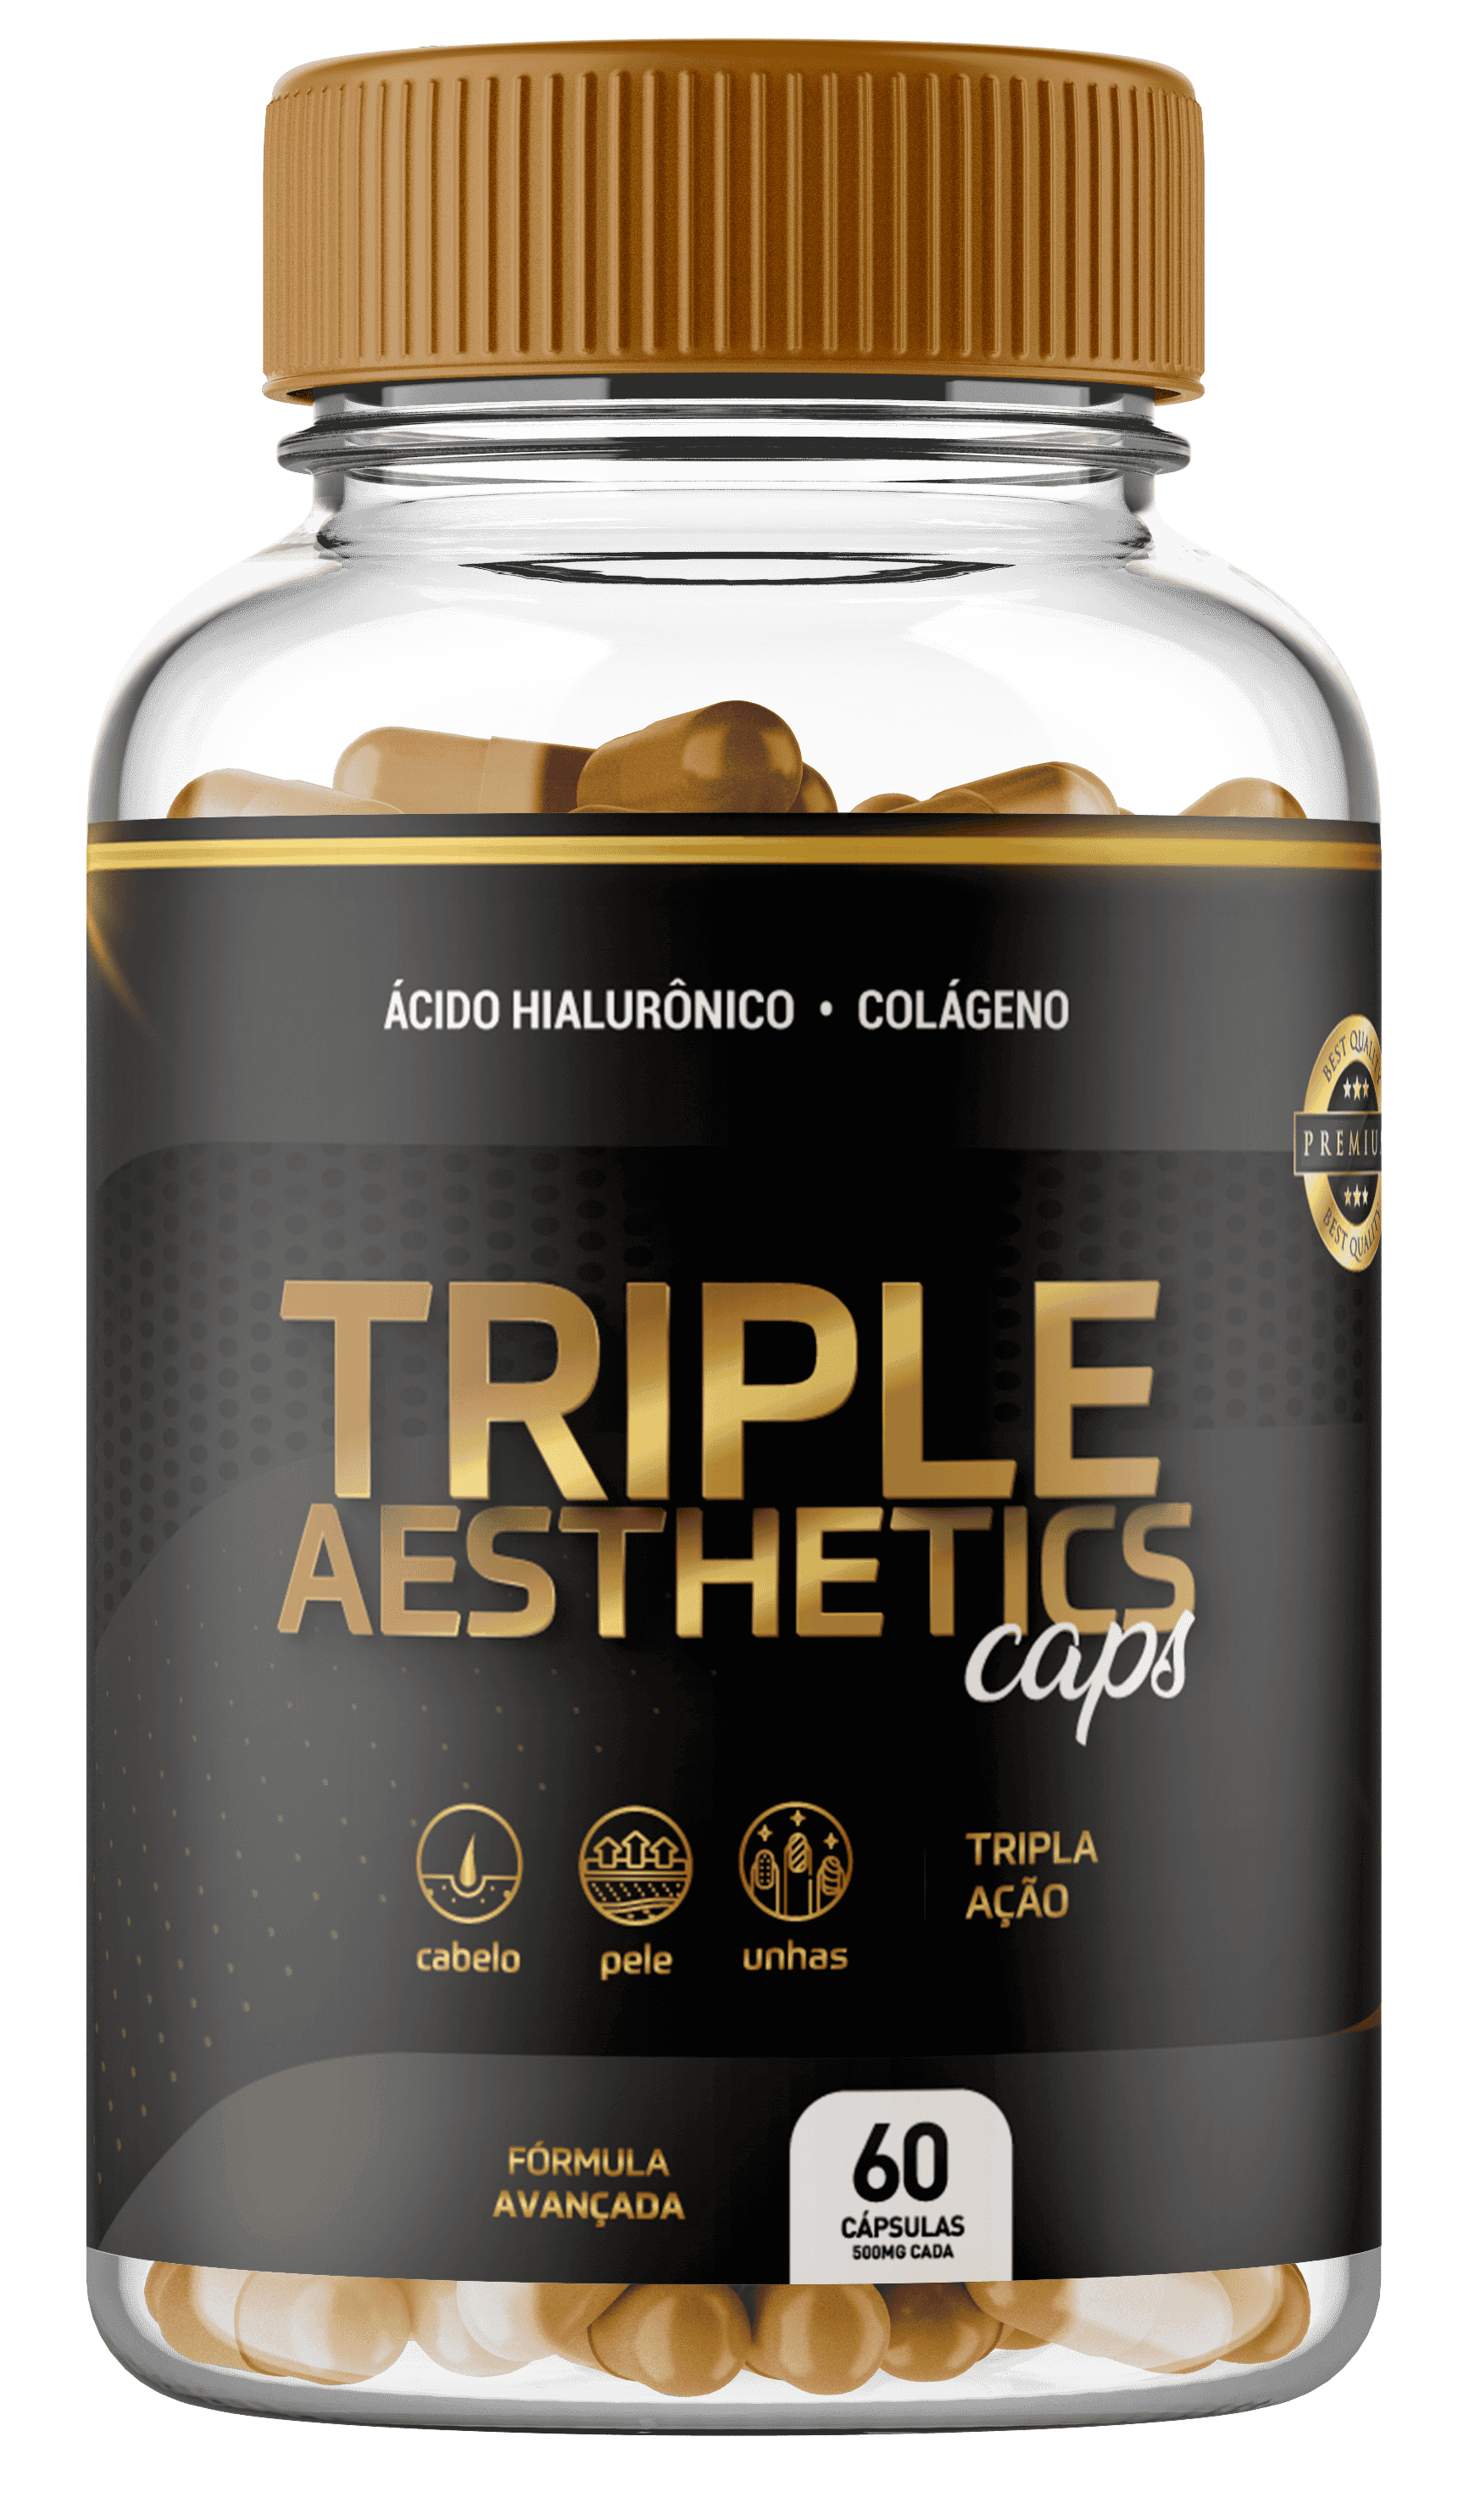 Triple Aesthetics Caps